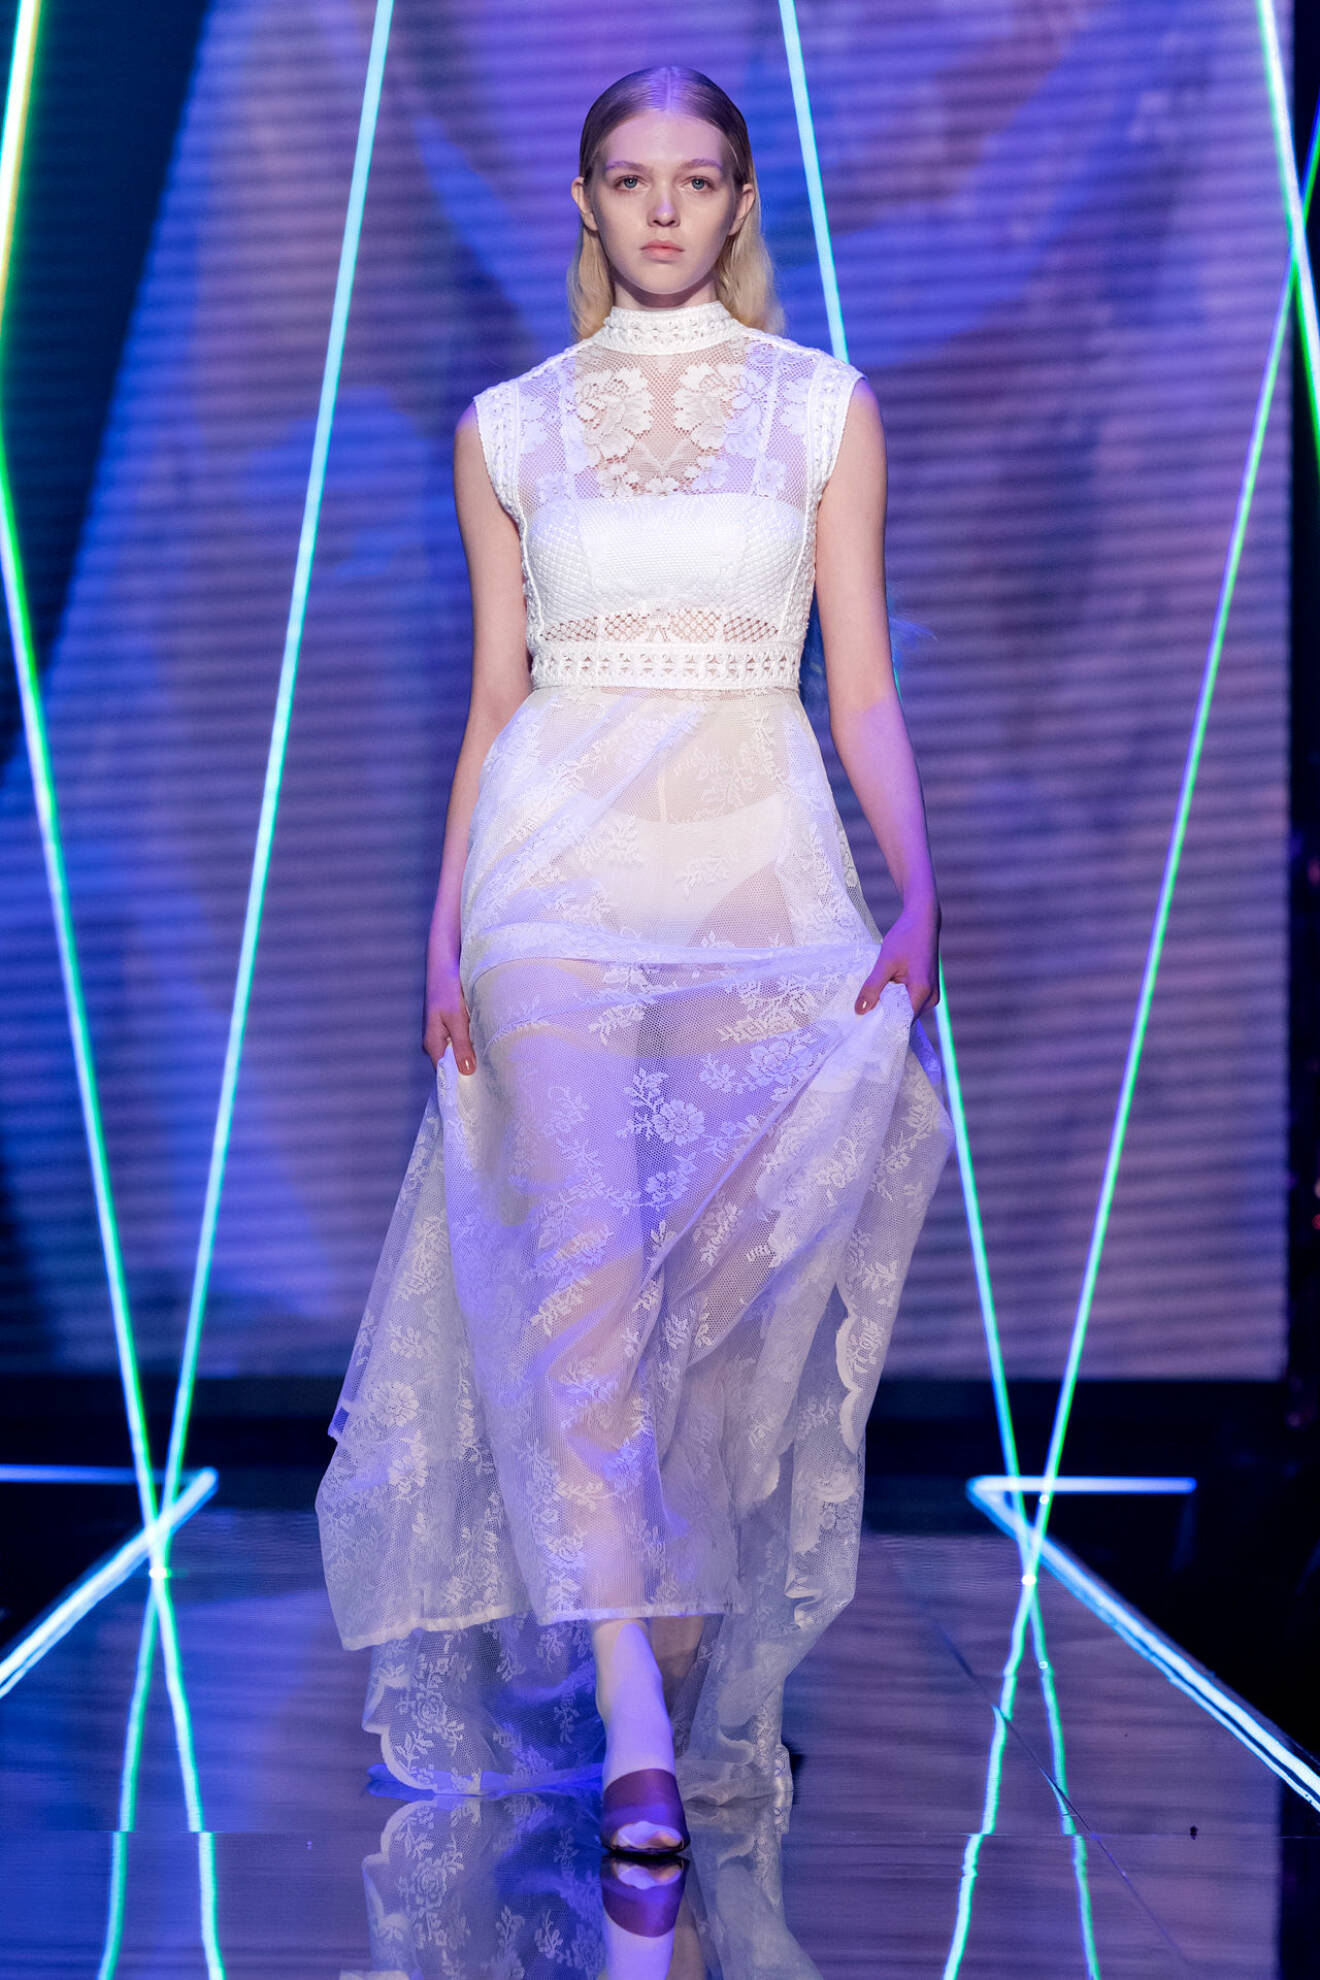 Lätt transparent spetsklänning i vitt från visningen av årets nykomling Amanda Borgfors Mészáros.